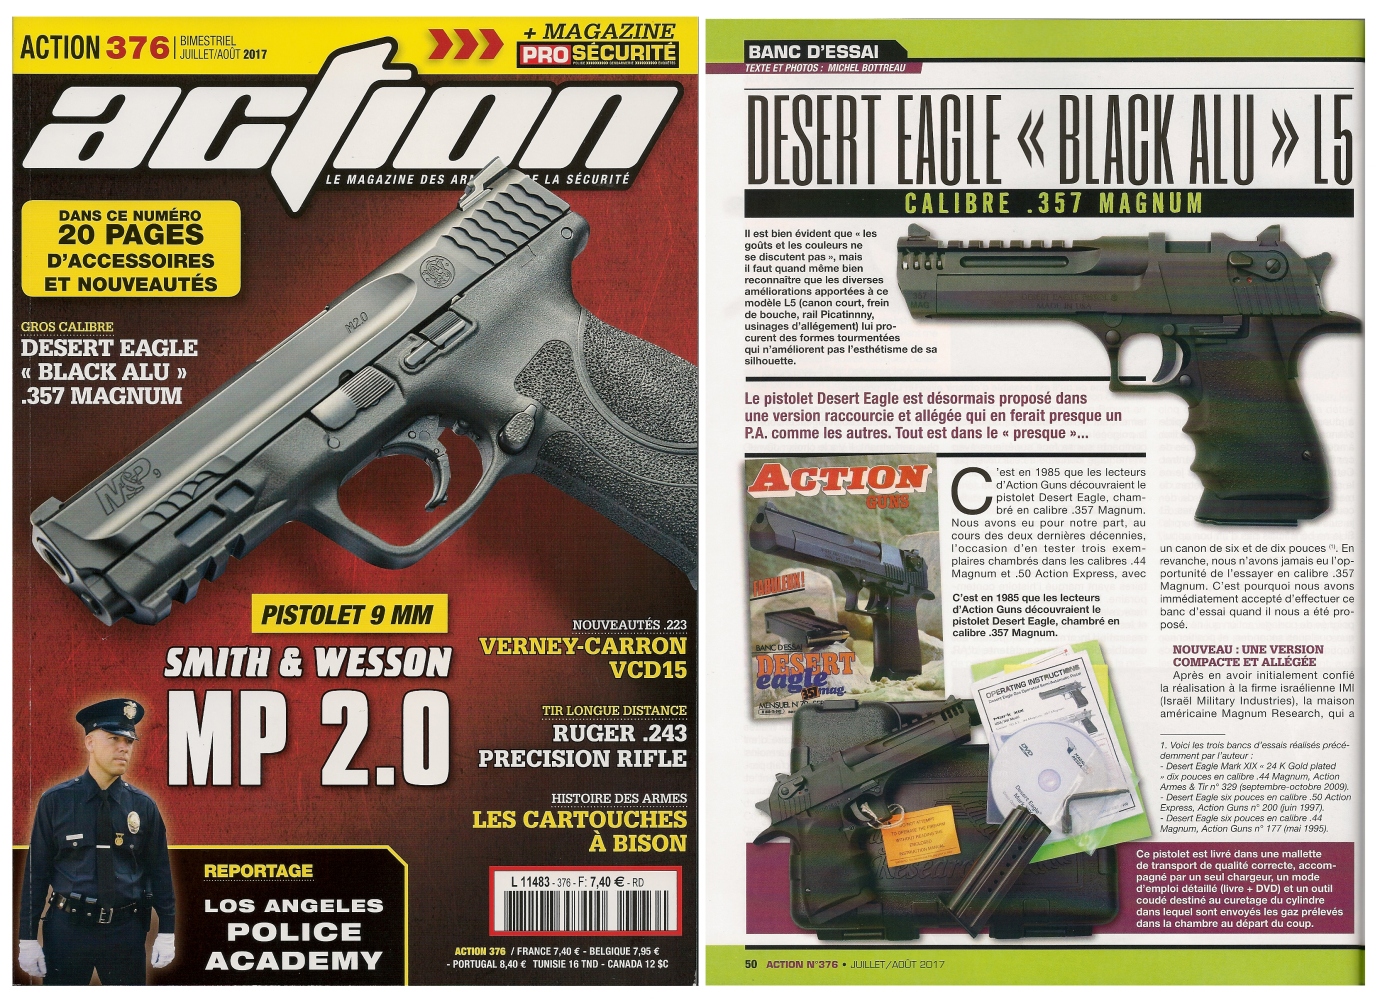 Le banc d’essai du pistolet Desert Eagle Black Alu L5 a été publié sur 6 pages dans le magazine Action n° 376 (juillet/août 2017). 